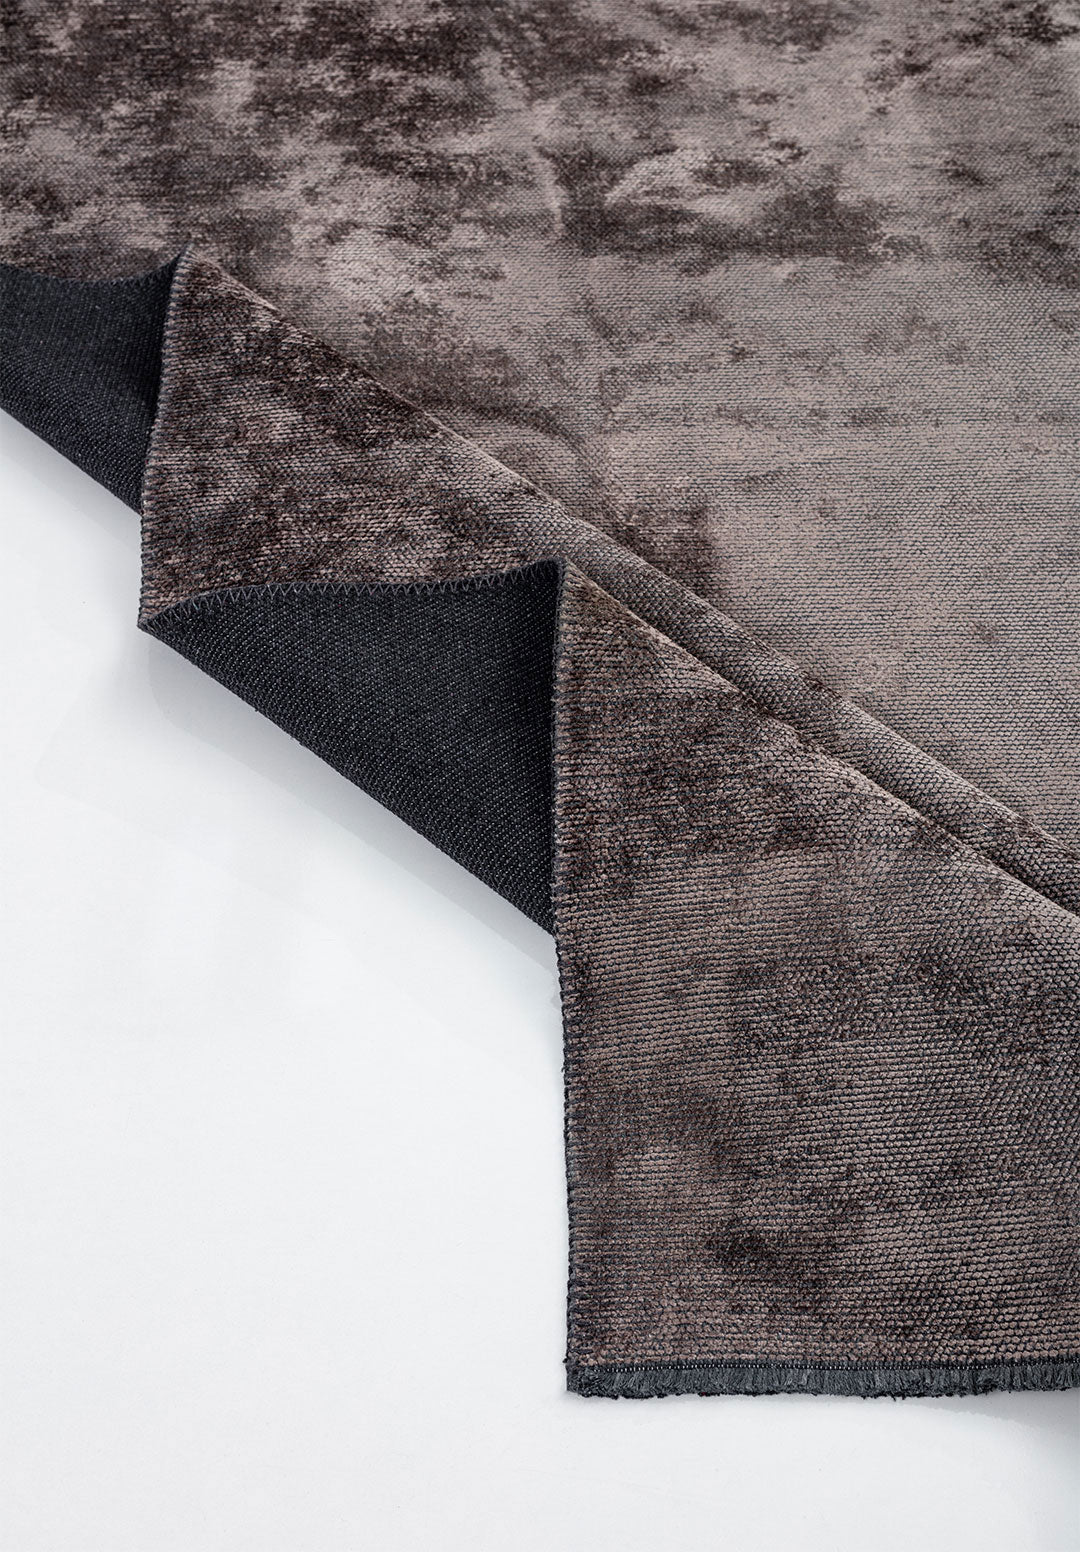 Plain Dark Grey Rug Rugs - Venetto Design Venettodesign.com